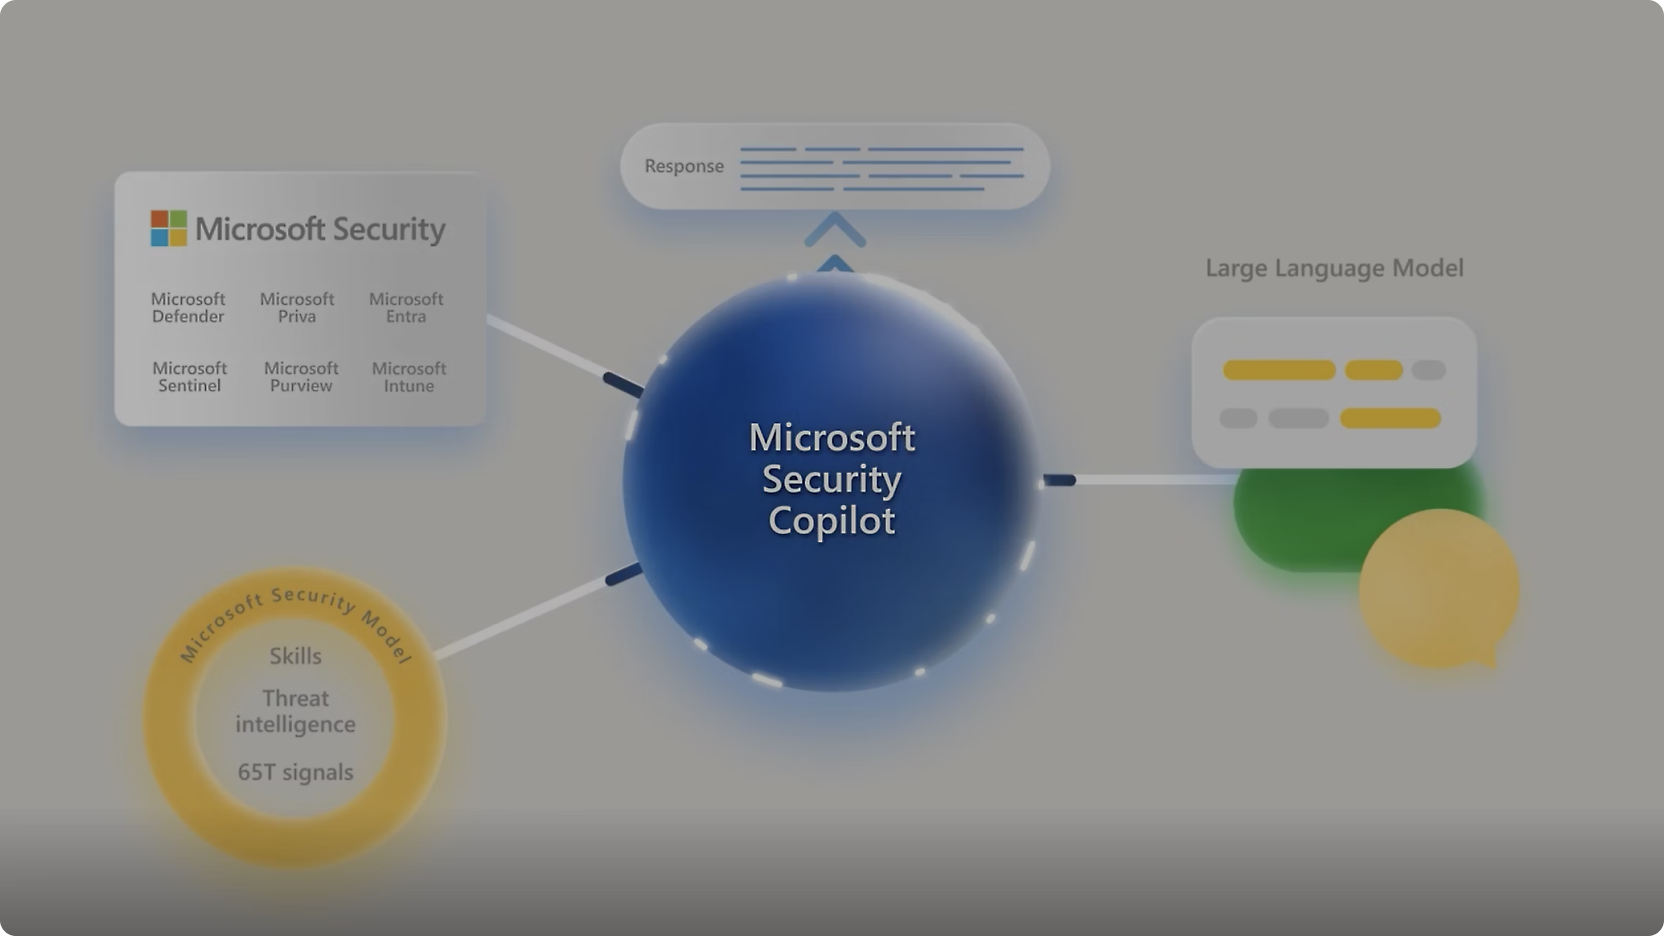 图示 "Microsoft Security Copilot "位于中心位置，与各种 Microsoft 安全工具相连接